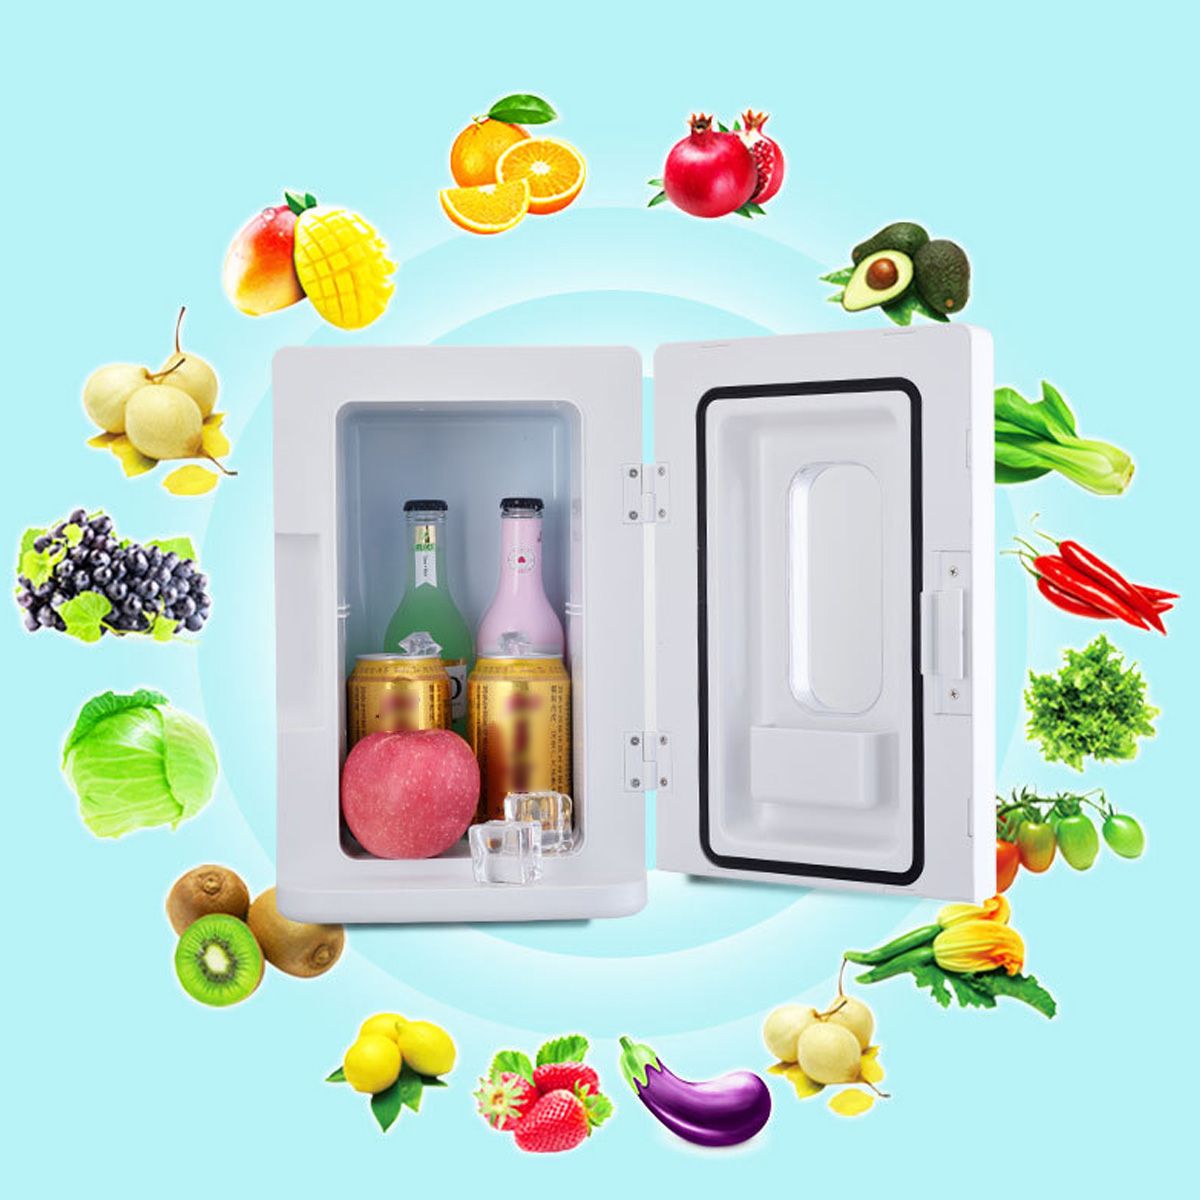 10L-Car-Refrigerator-Dormitory-Small-Refrigerator-Mini-Refrigerator-Car-Home-Dual-use-1435718